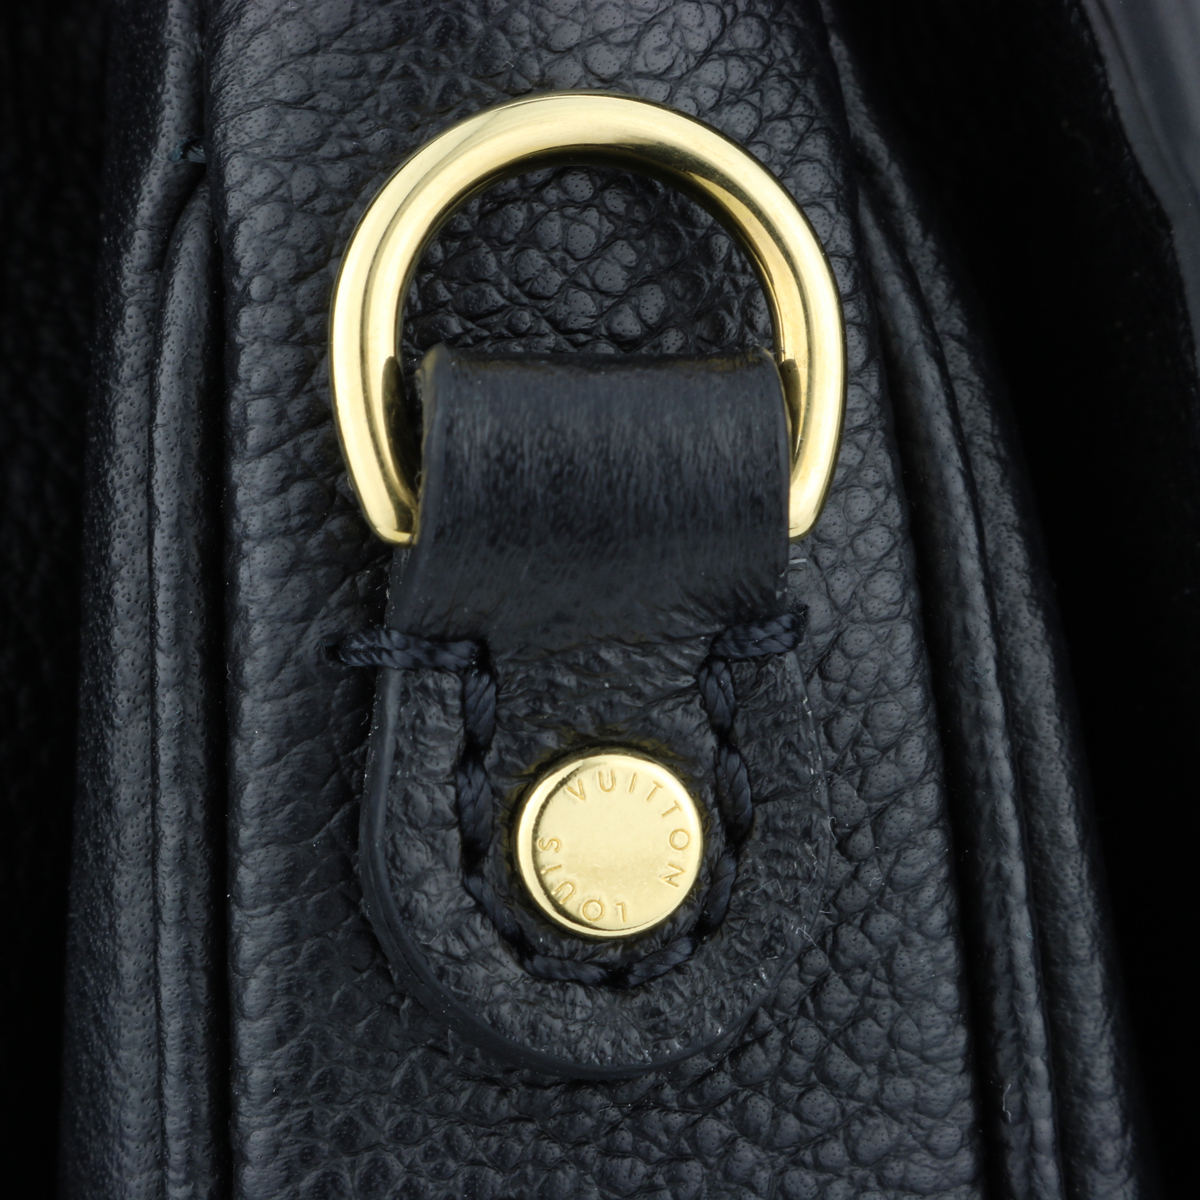 Louis Vuitton Pochette Métis Monogram Empreinte Leather Black with Gold Hardware 2017 - BoutiQi Bags